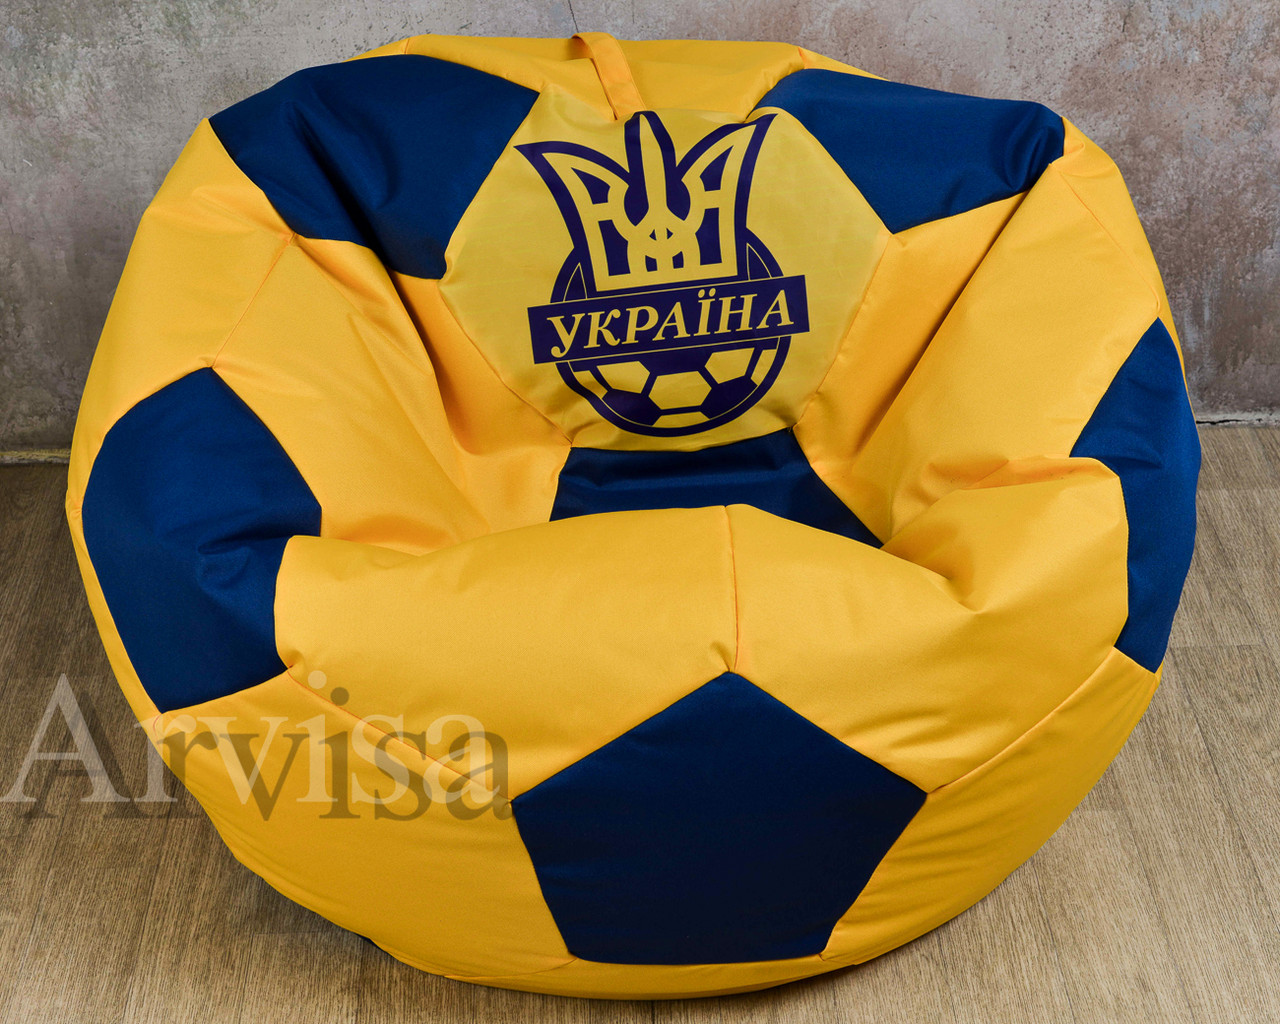 Кресло м’ ячик Україна XXL (oxford 600